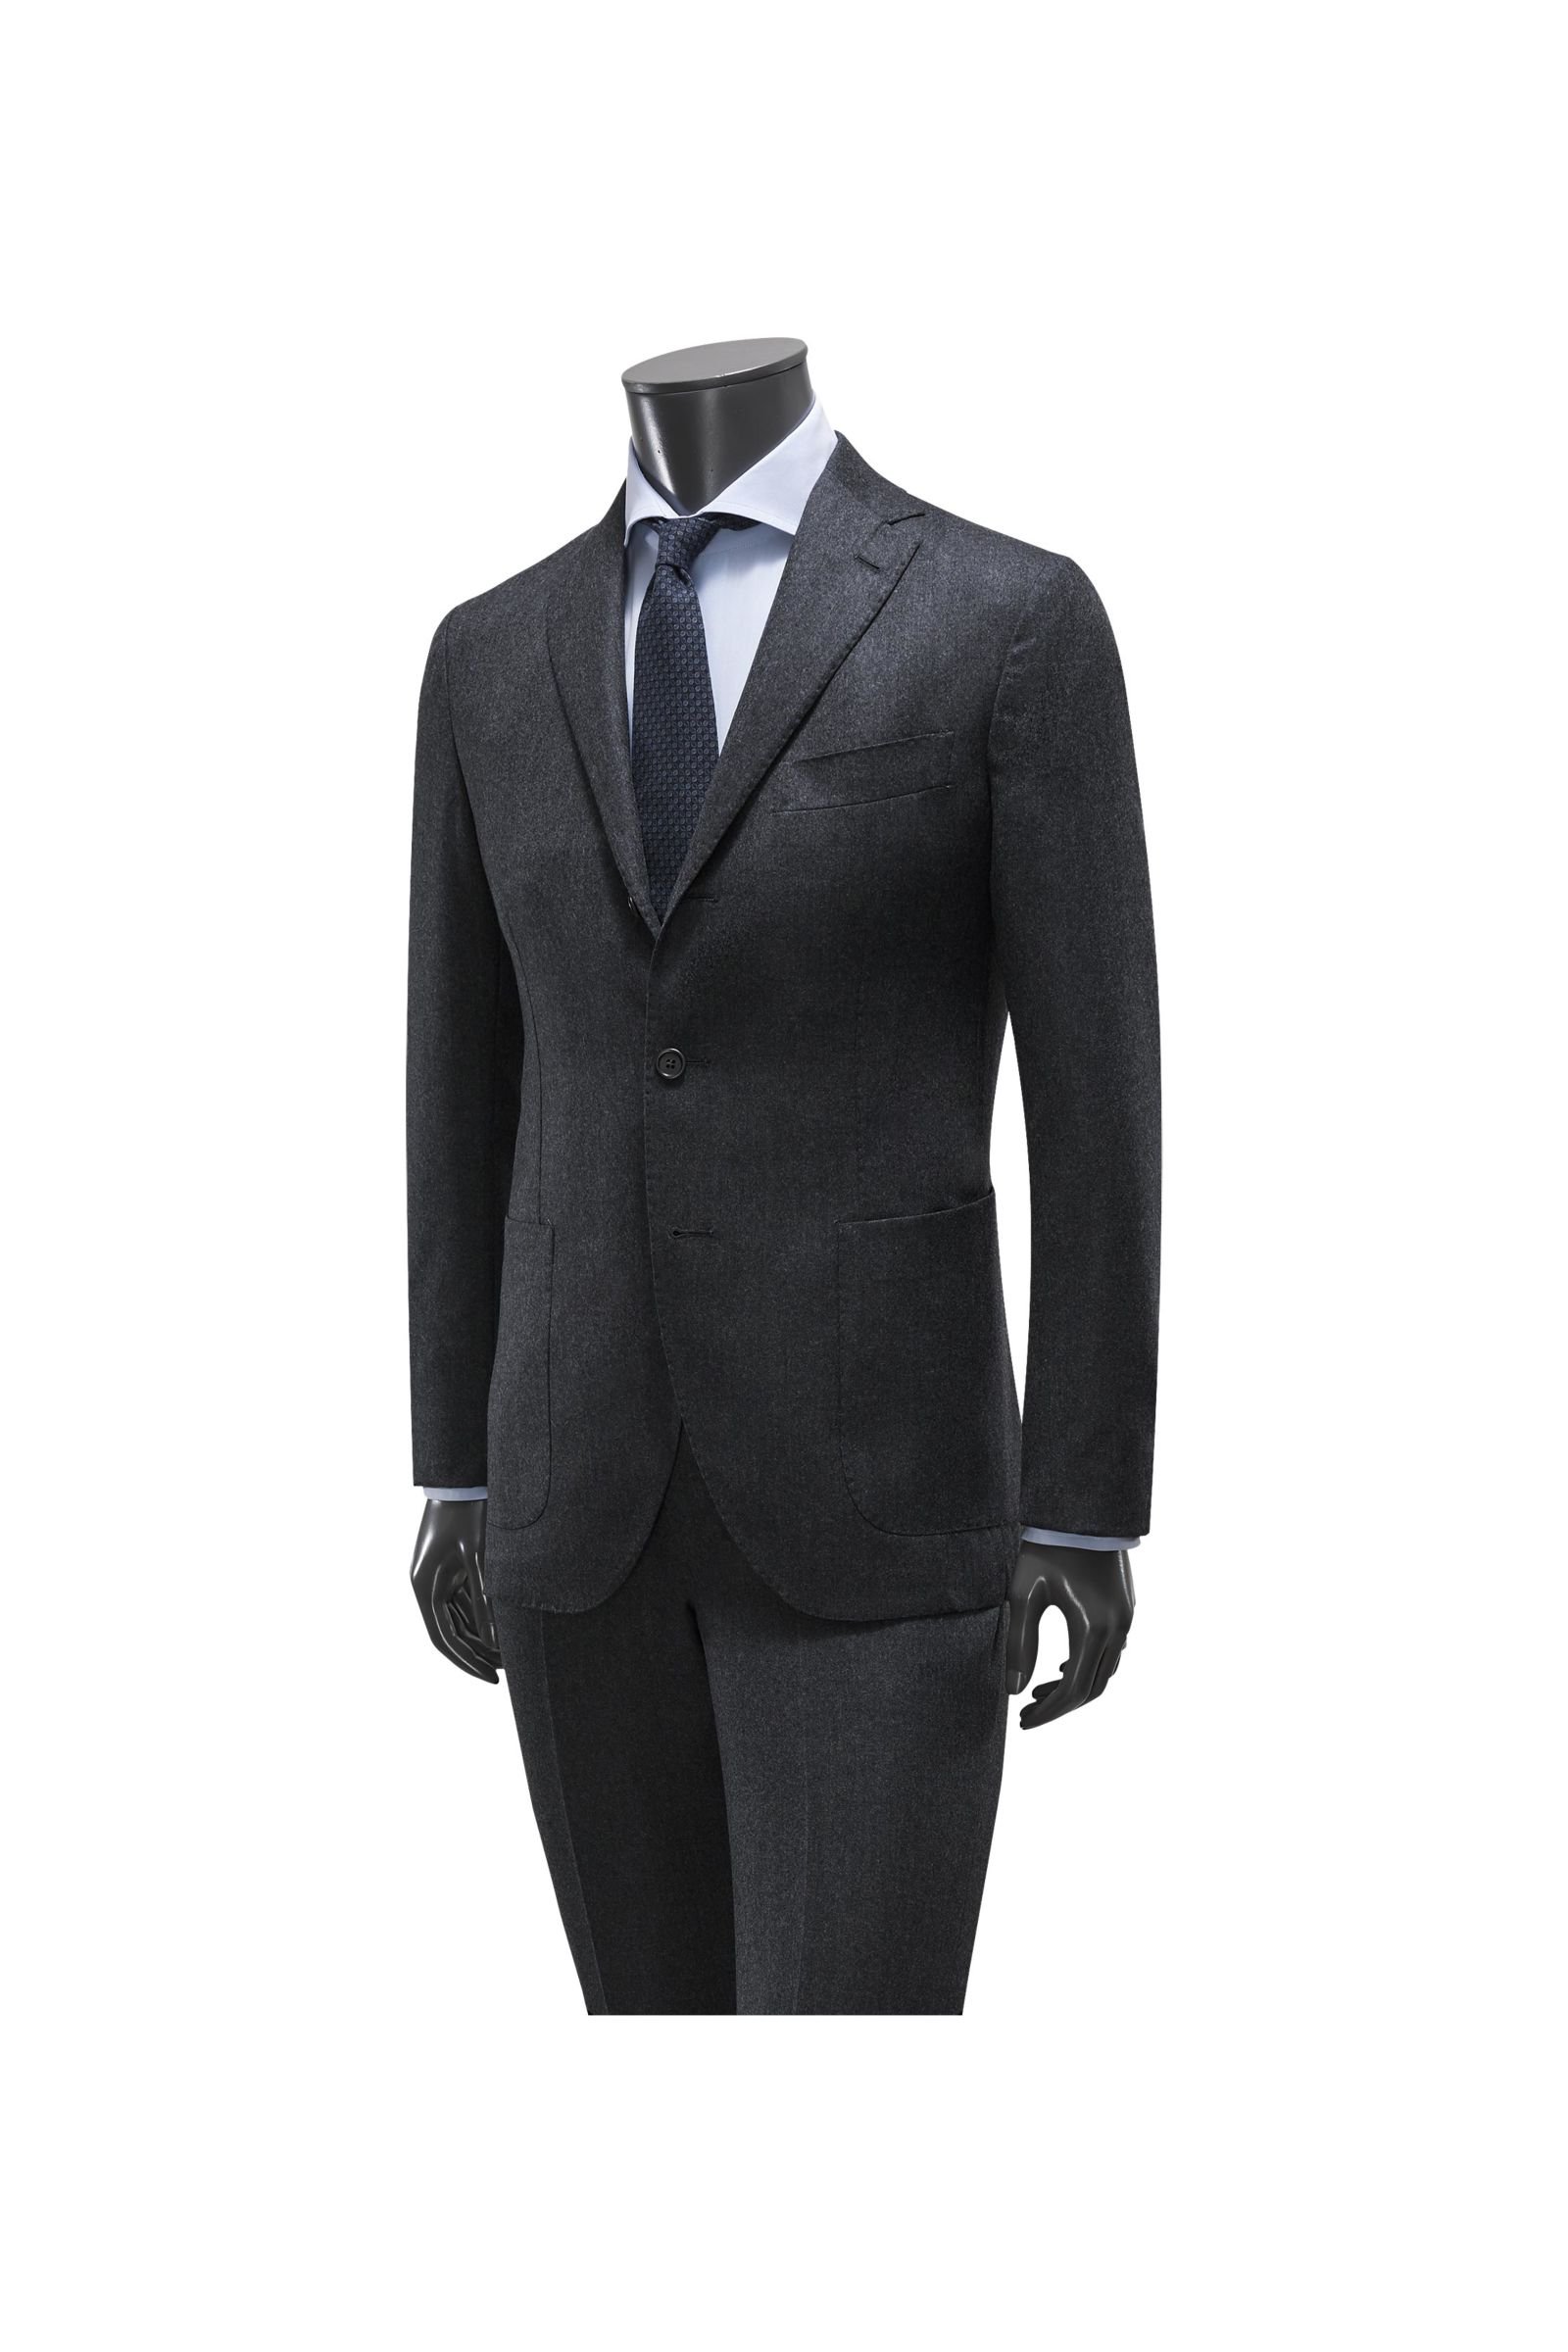 Suit 'Sorrento' dark grey